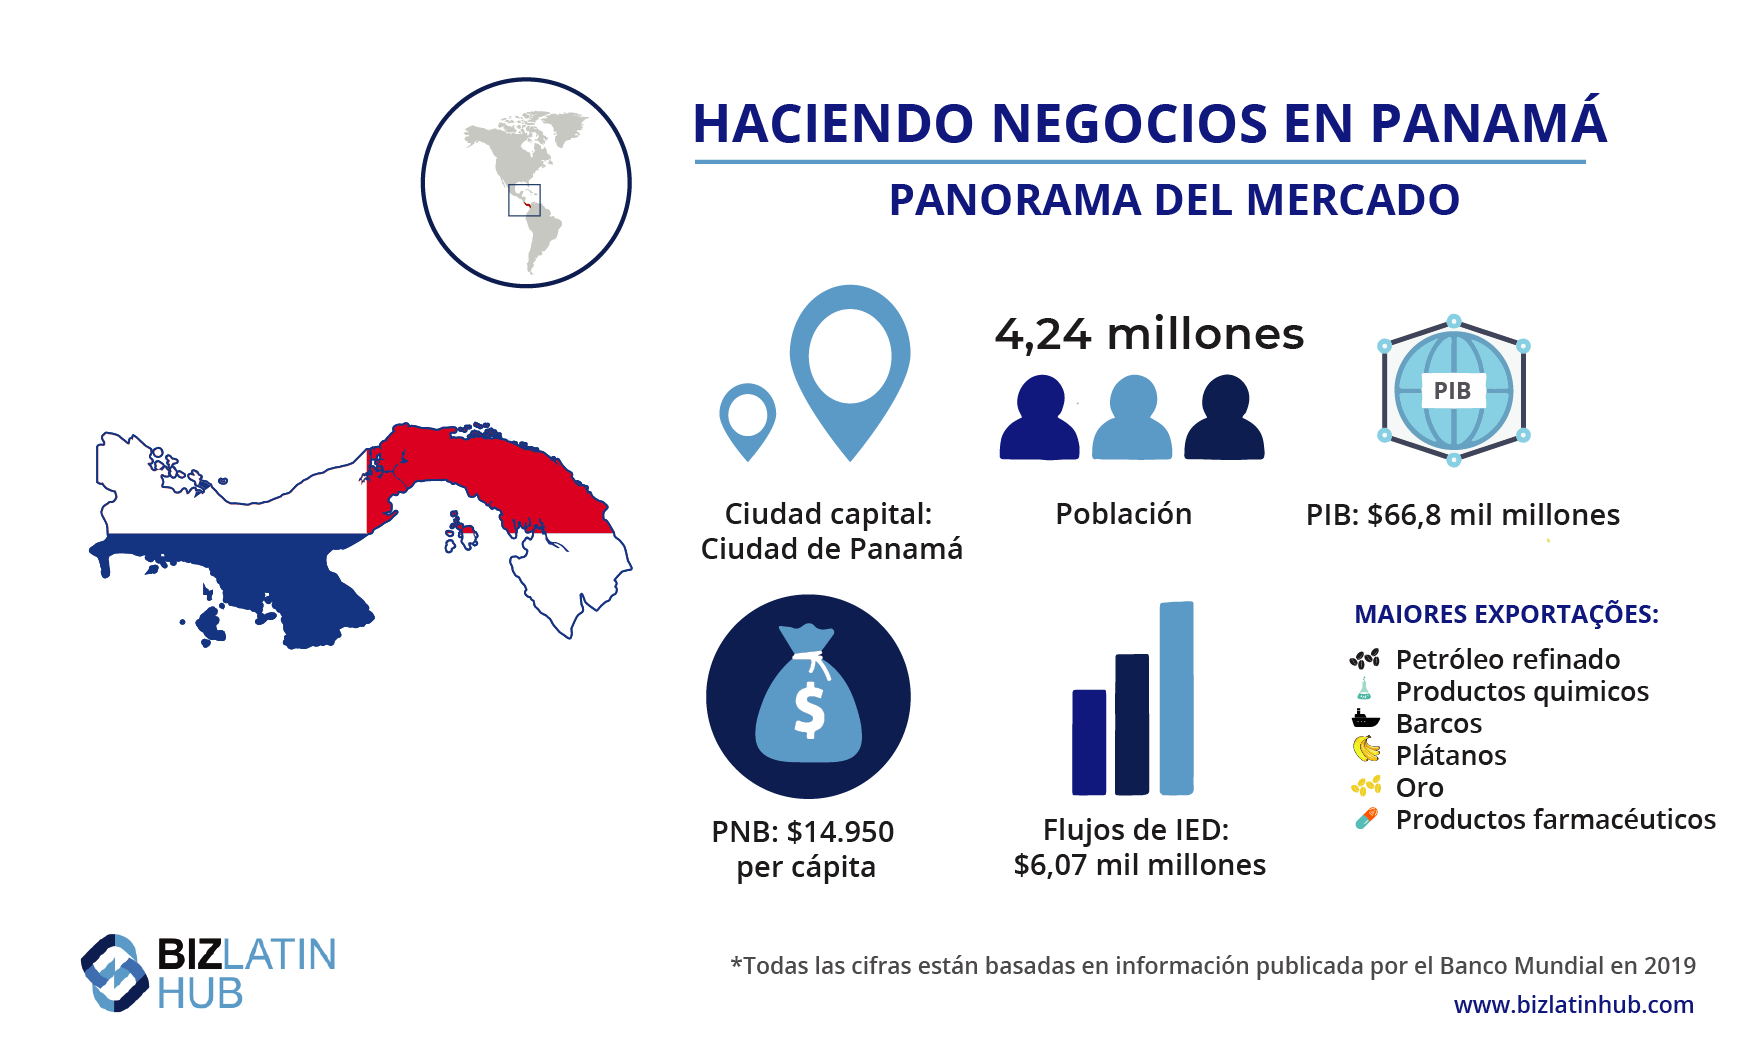 Panorama del mercado de Panamá, información que puede resultar relevante para cualquiera pensando en contratar un asesor legal corporativo en Panamá.